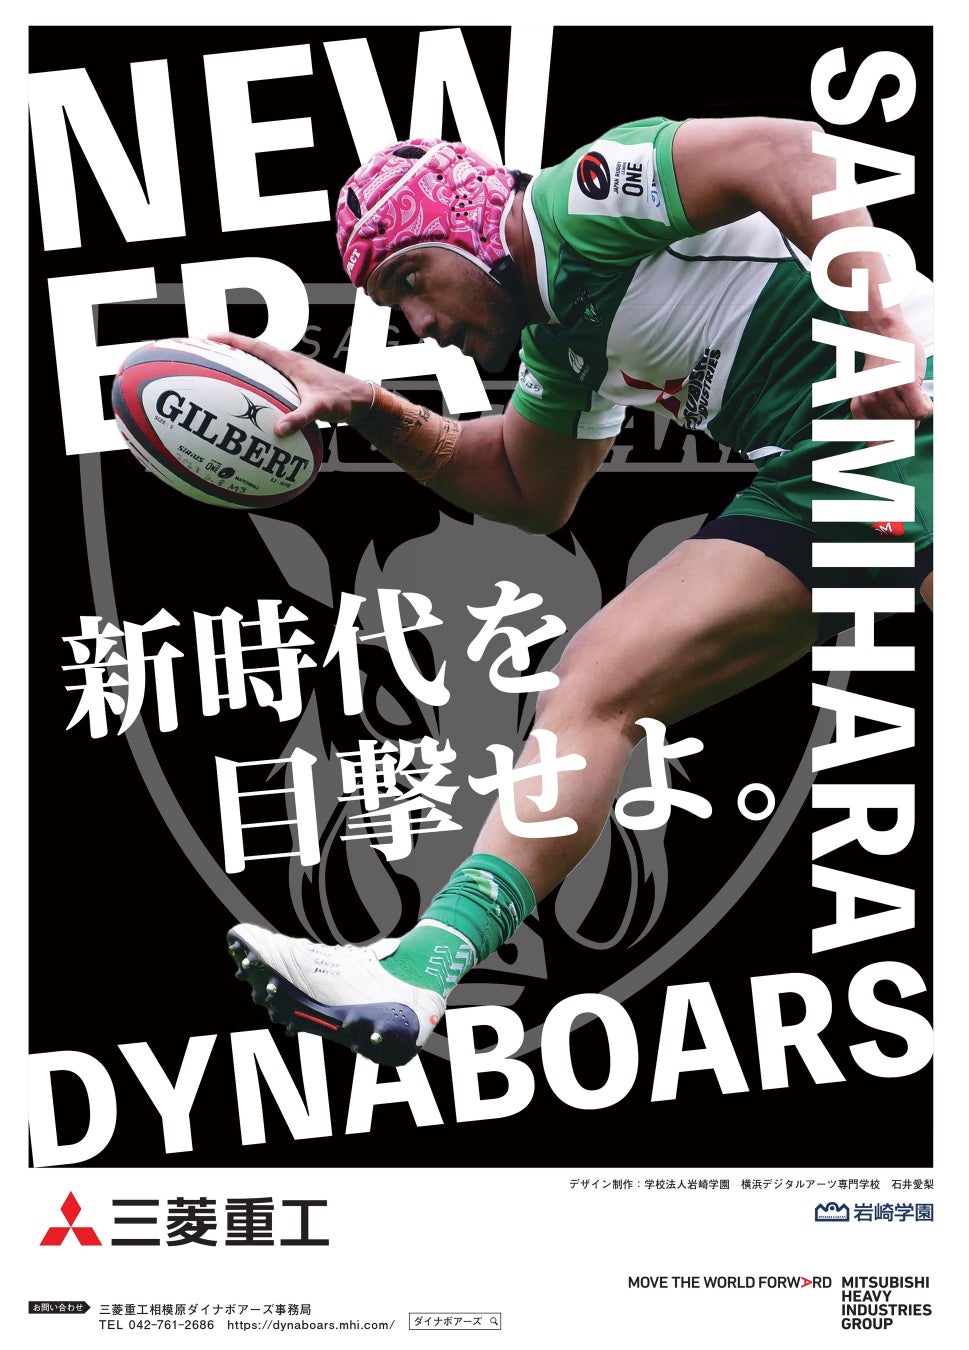 ジャパンラグビーリーグワンまもなく開幕！学校法人岩崎学園の学生が三菱重工相模原ダイナボアーズのチーム応援ポスターをデザインしました。